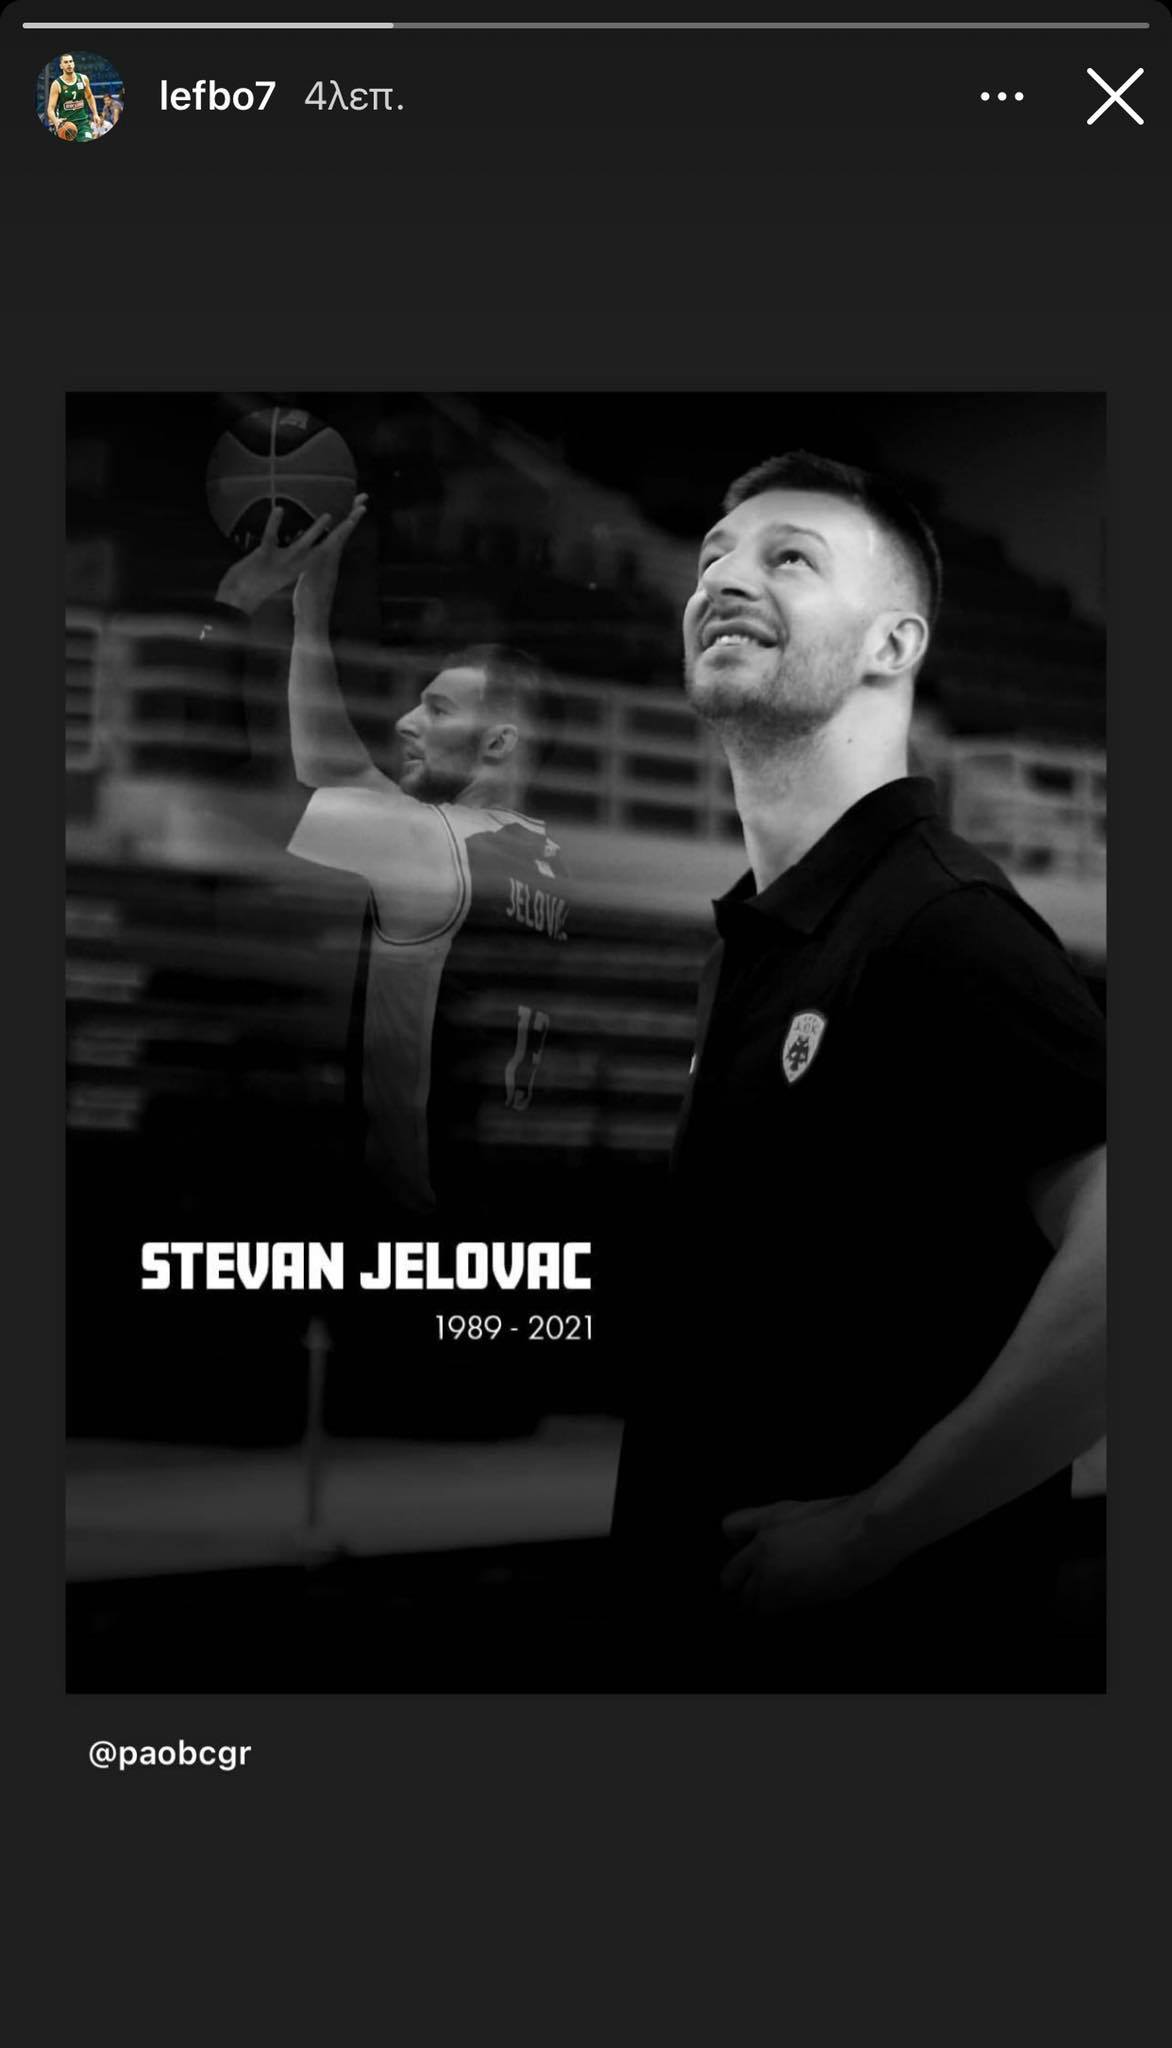 Συγκλονισμένοι οι παίκτες του Παναθηναϊκού για τον Στέφαν Γέλοβατς (pics)